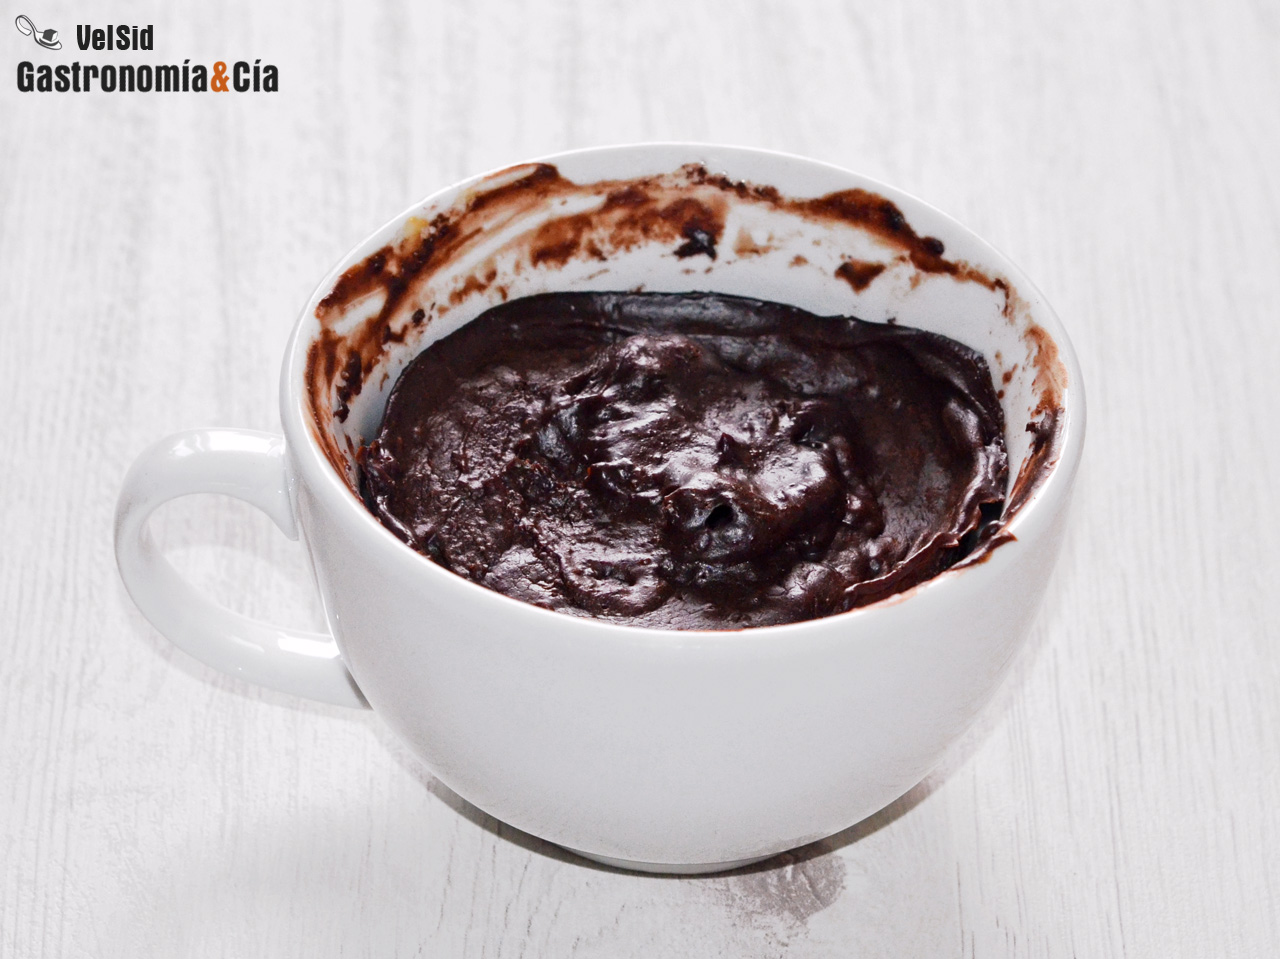 Brownie de algarroba (o cacao) y cacahuete en 5 minutos